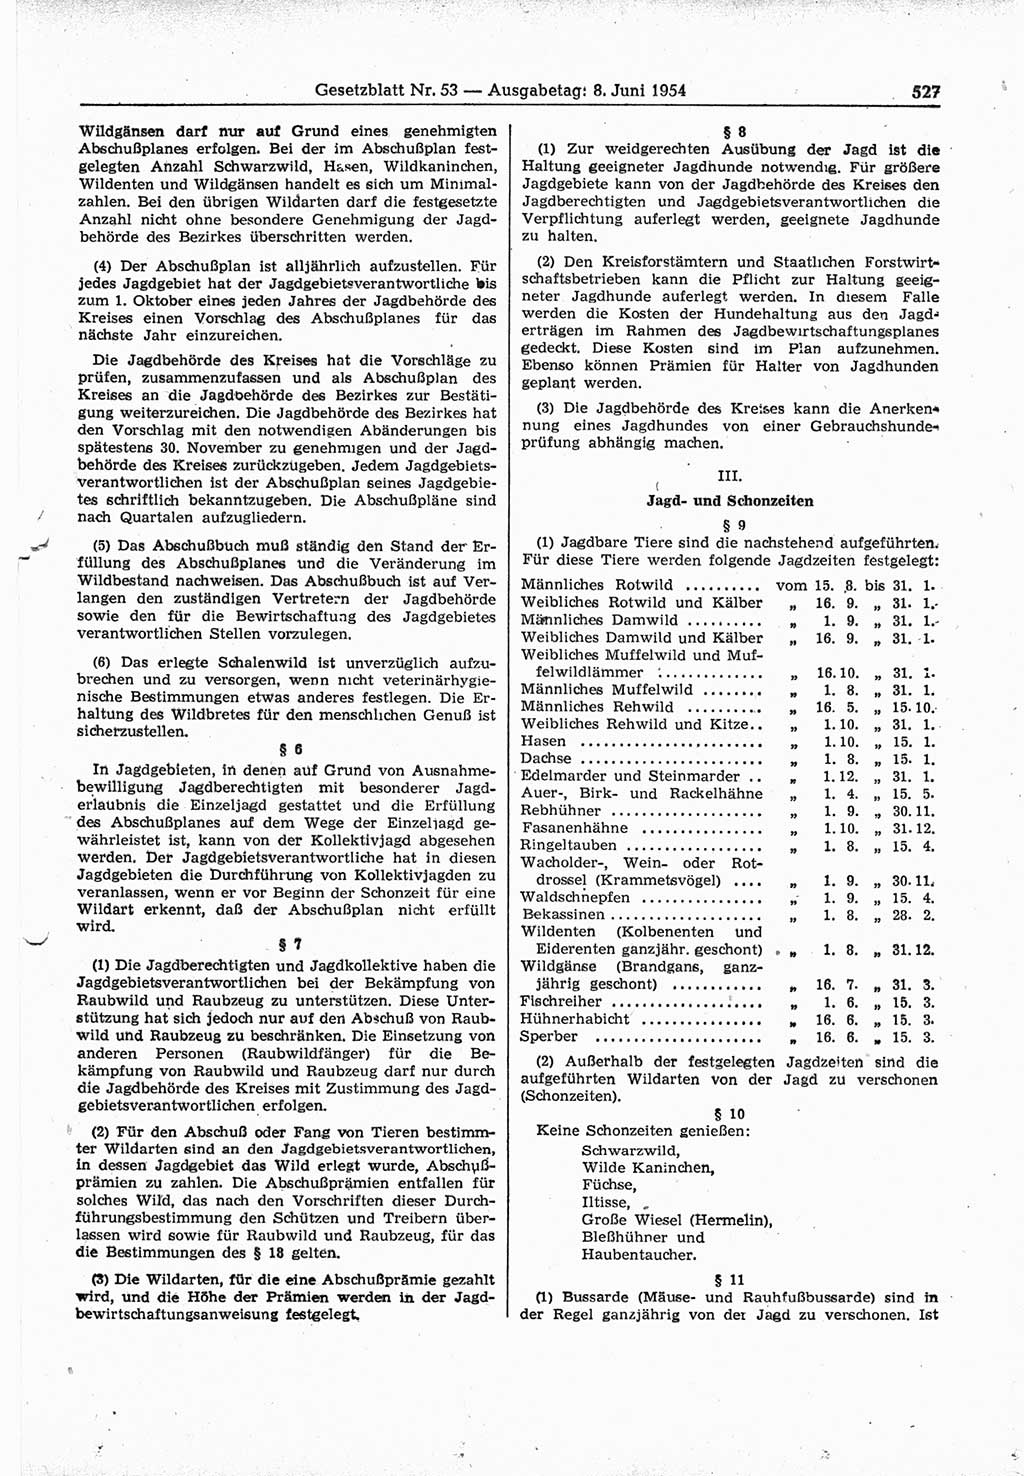 Gesetzblatt (GBl.) der Deutschen Demokratischen Republik (DDR) 1954, Seite 527 (GBl. DDR 1954, S. 527)